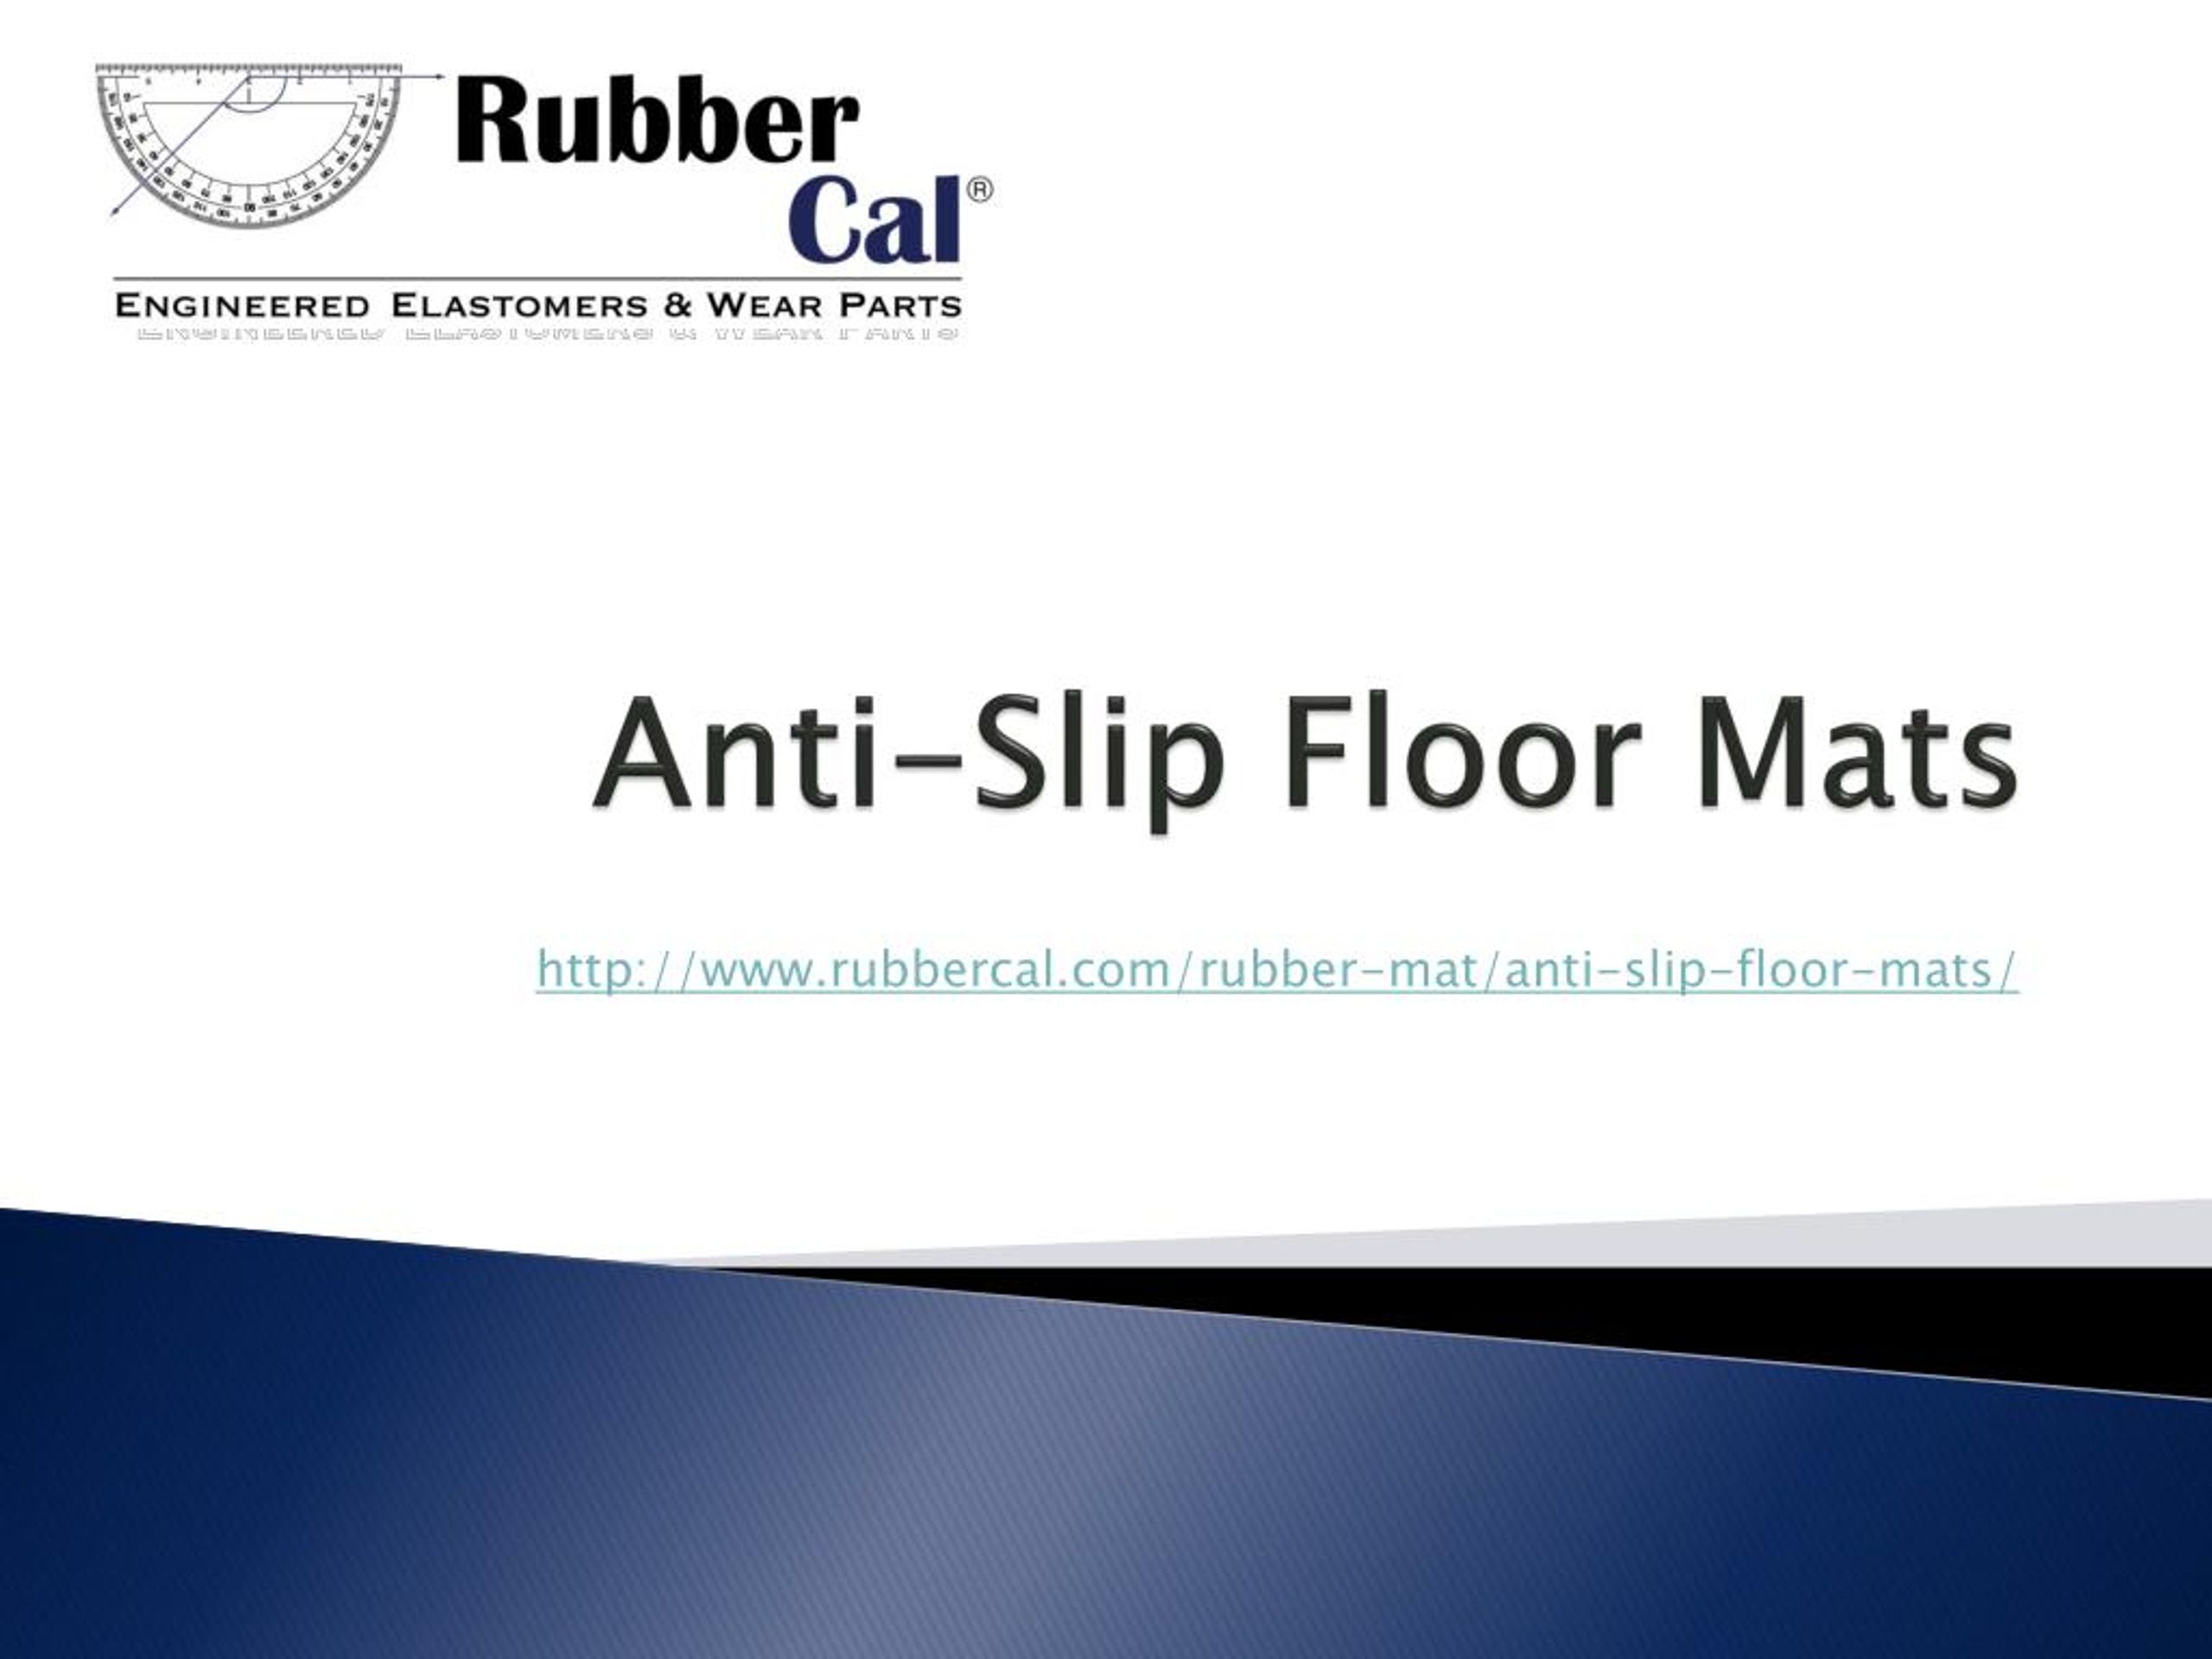 https://image4.slideserve.com/7687407/anti-slip-floor-mats-l.jpg